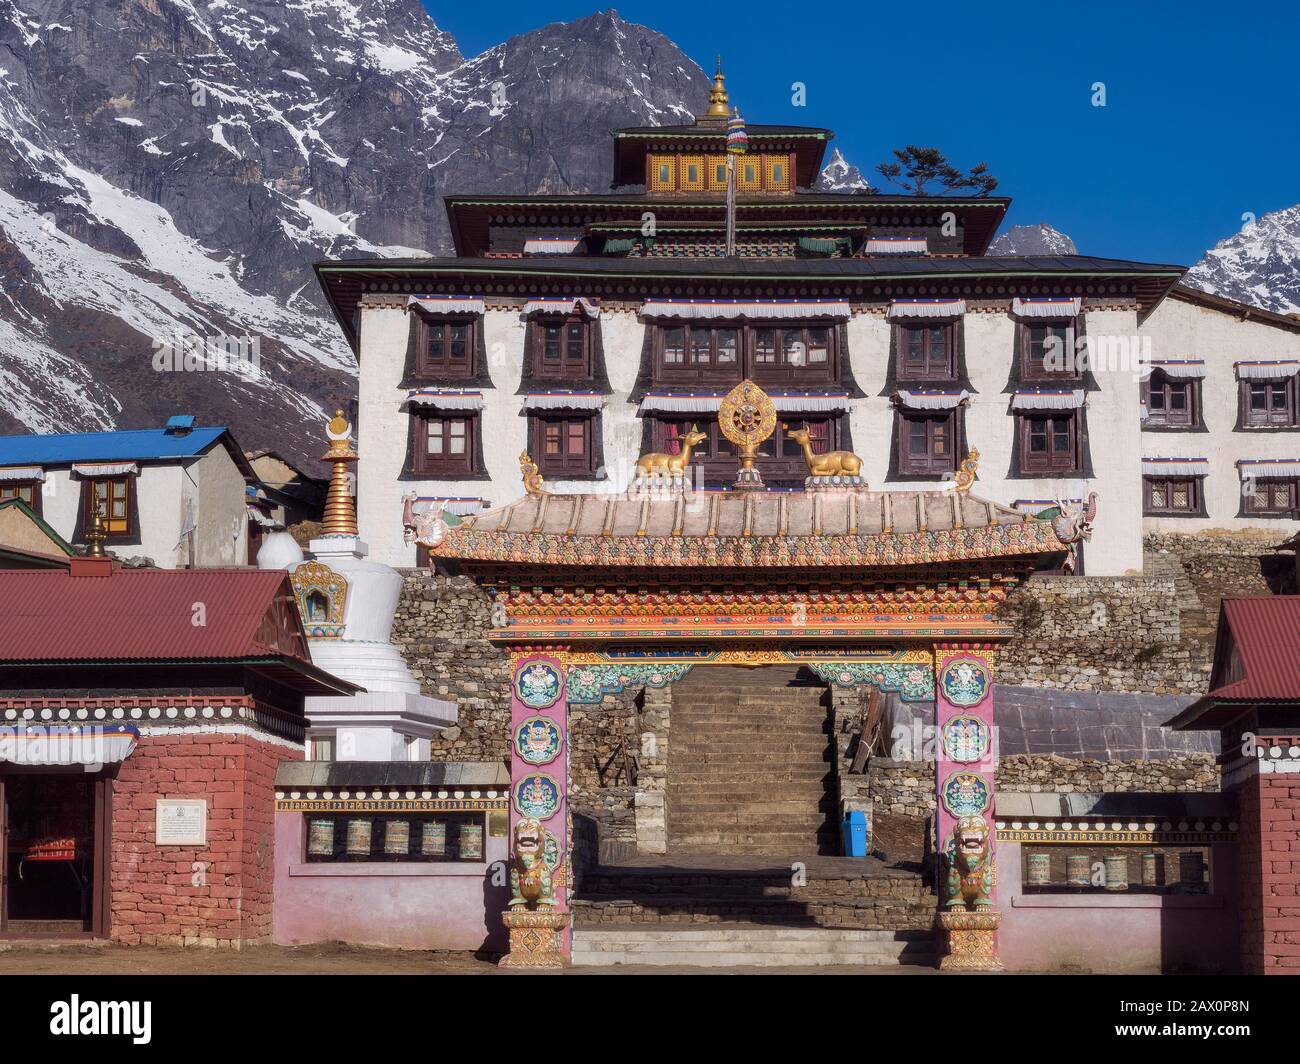 Monastère de Tengboche, le monastère le plus grand et le plus important sur le chemin du camp de base de l'Everest, région de Khumbu, Népal. Banque D'Images